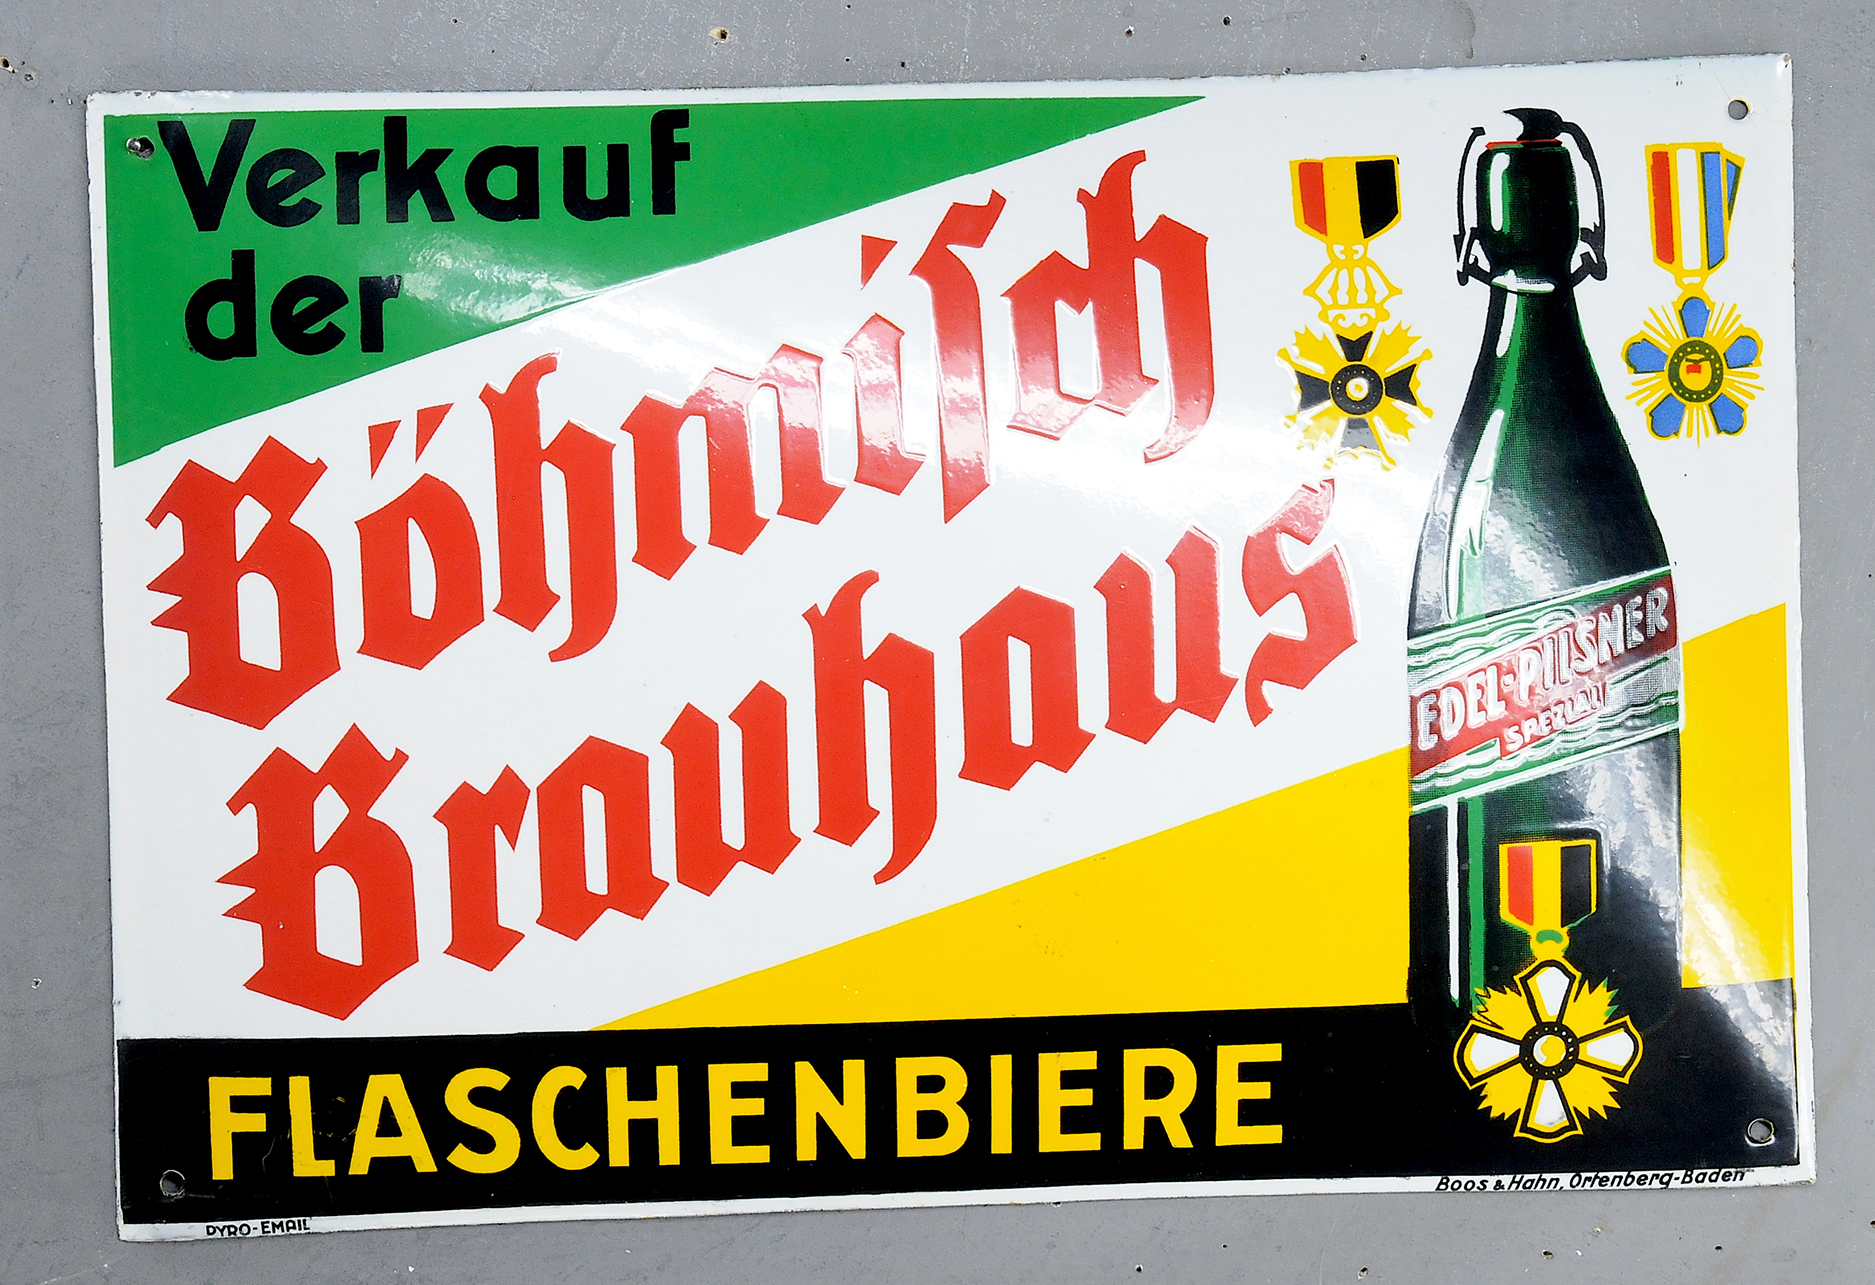 Böhmisch Brauhaus Flaschenbiere - Image 3 of 3